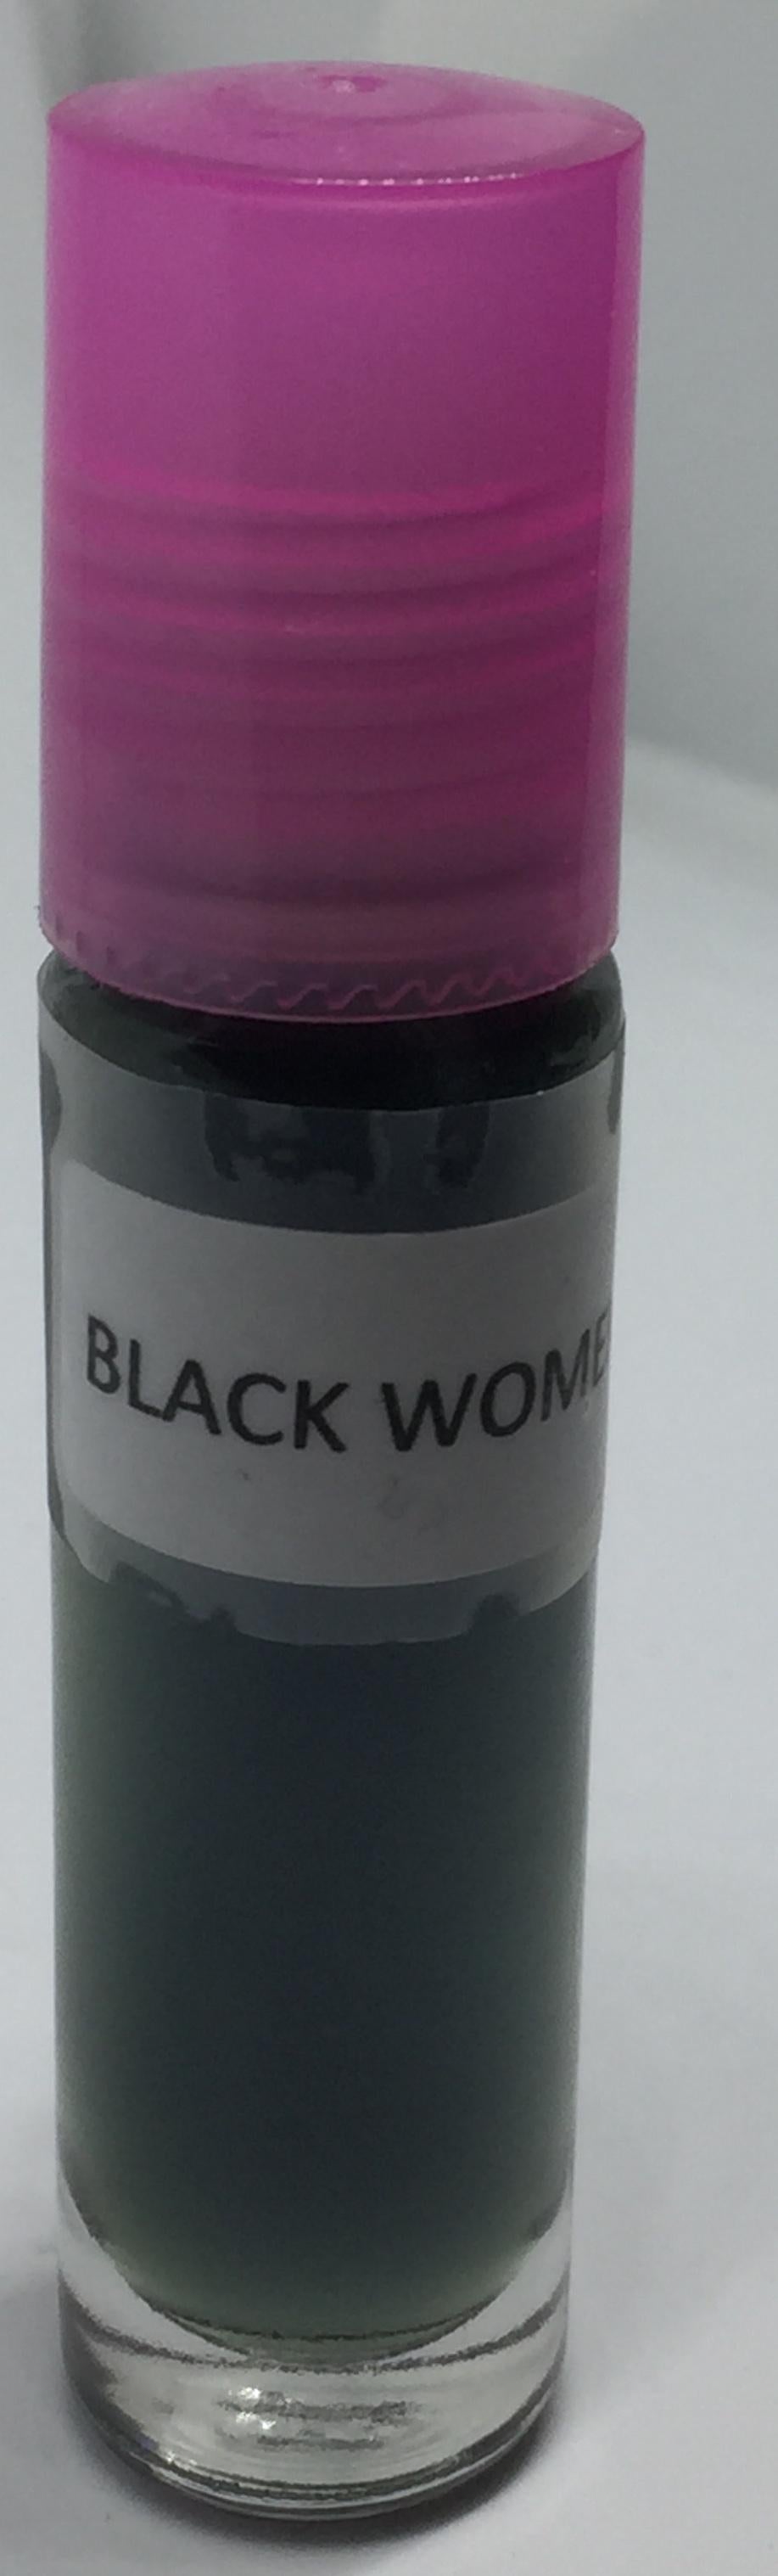 Black Women: Fragrance(Perfume)Body Oil